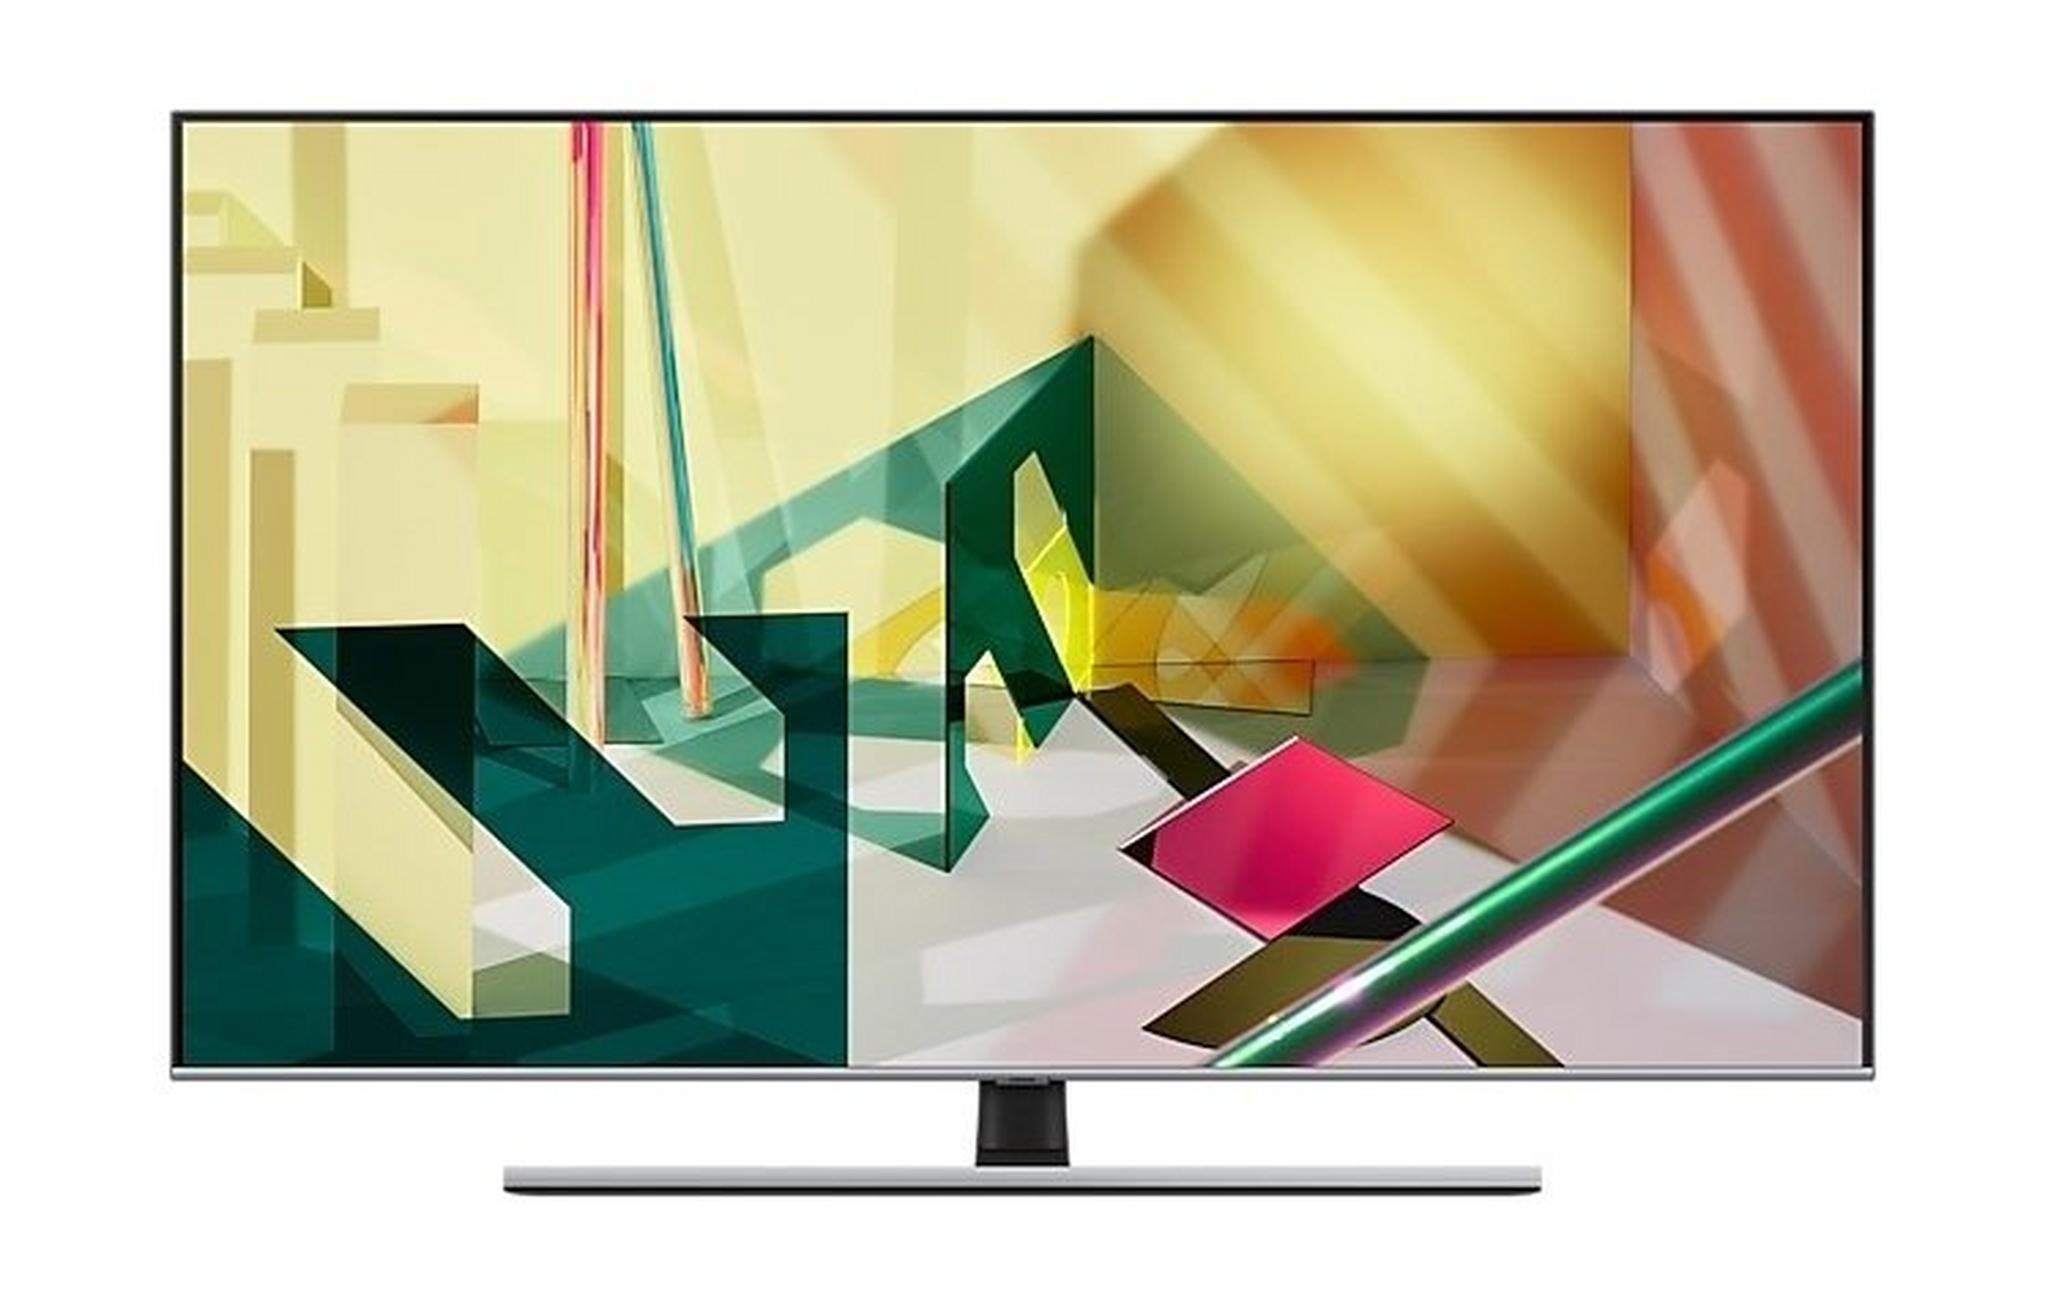 Samsung TV 75" QLED 4K Smart LED (2020) - QA75Q70T